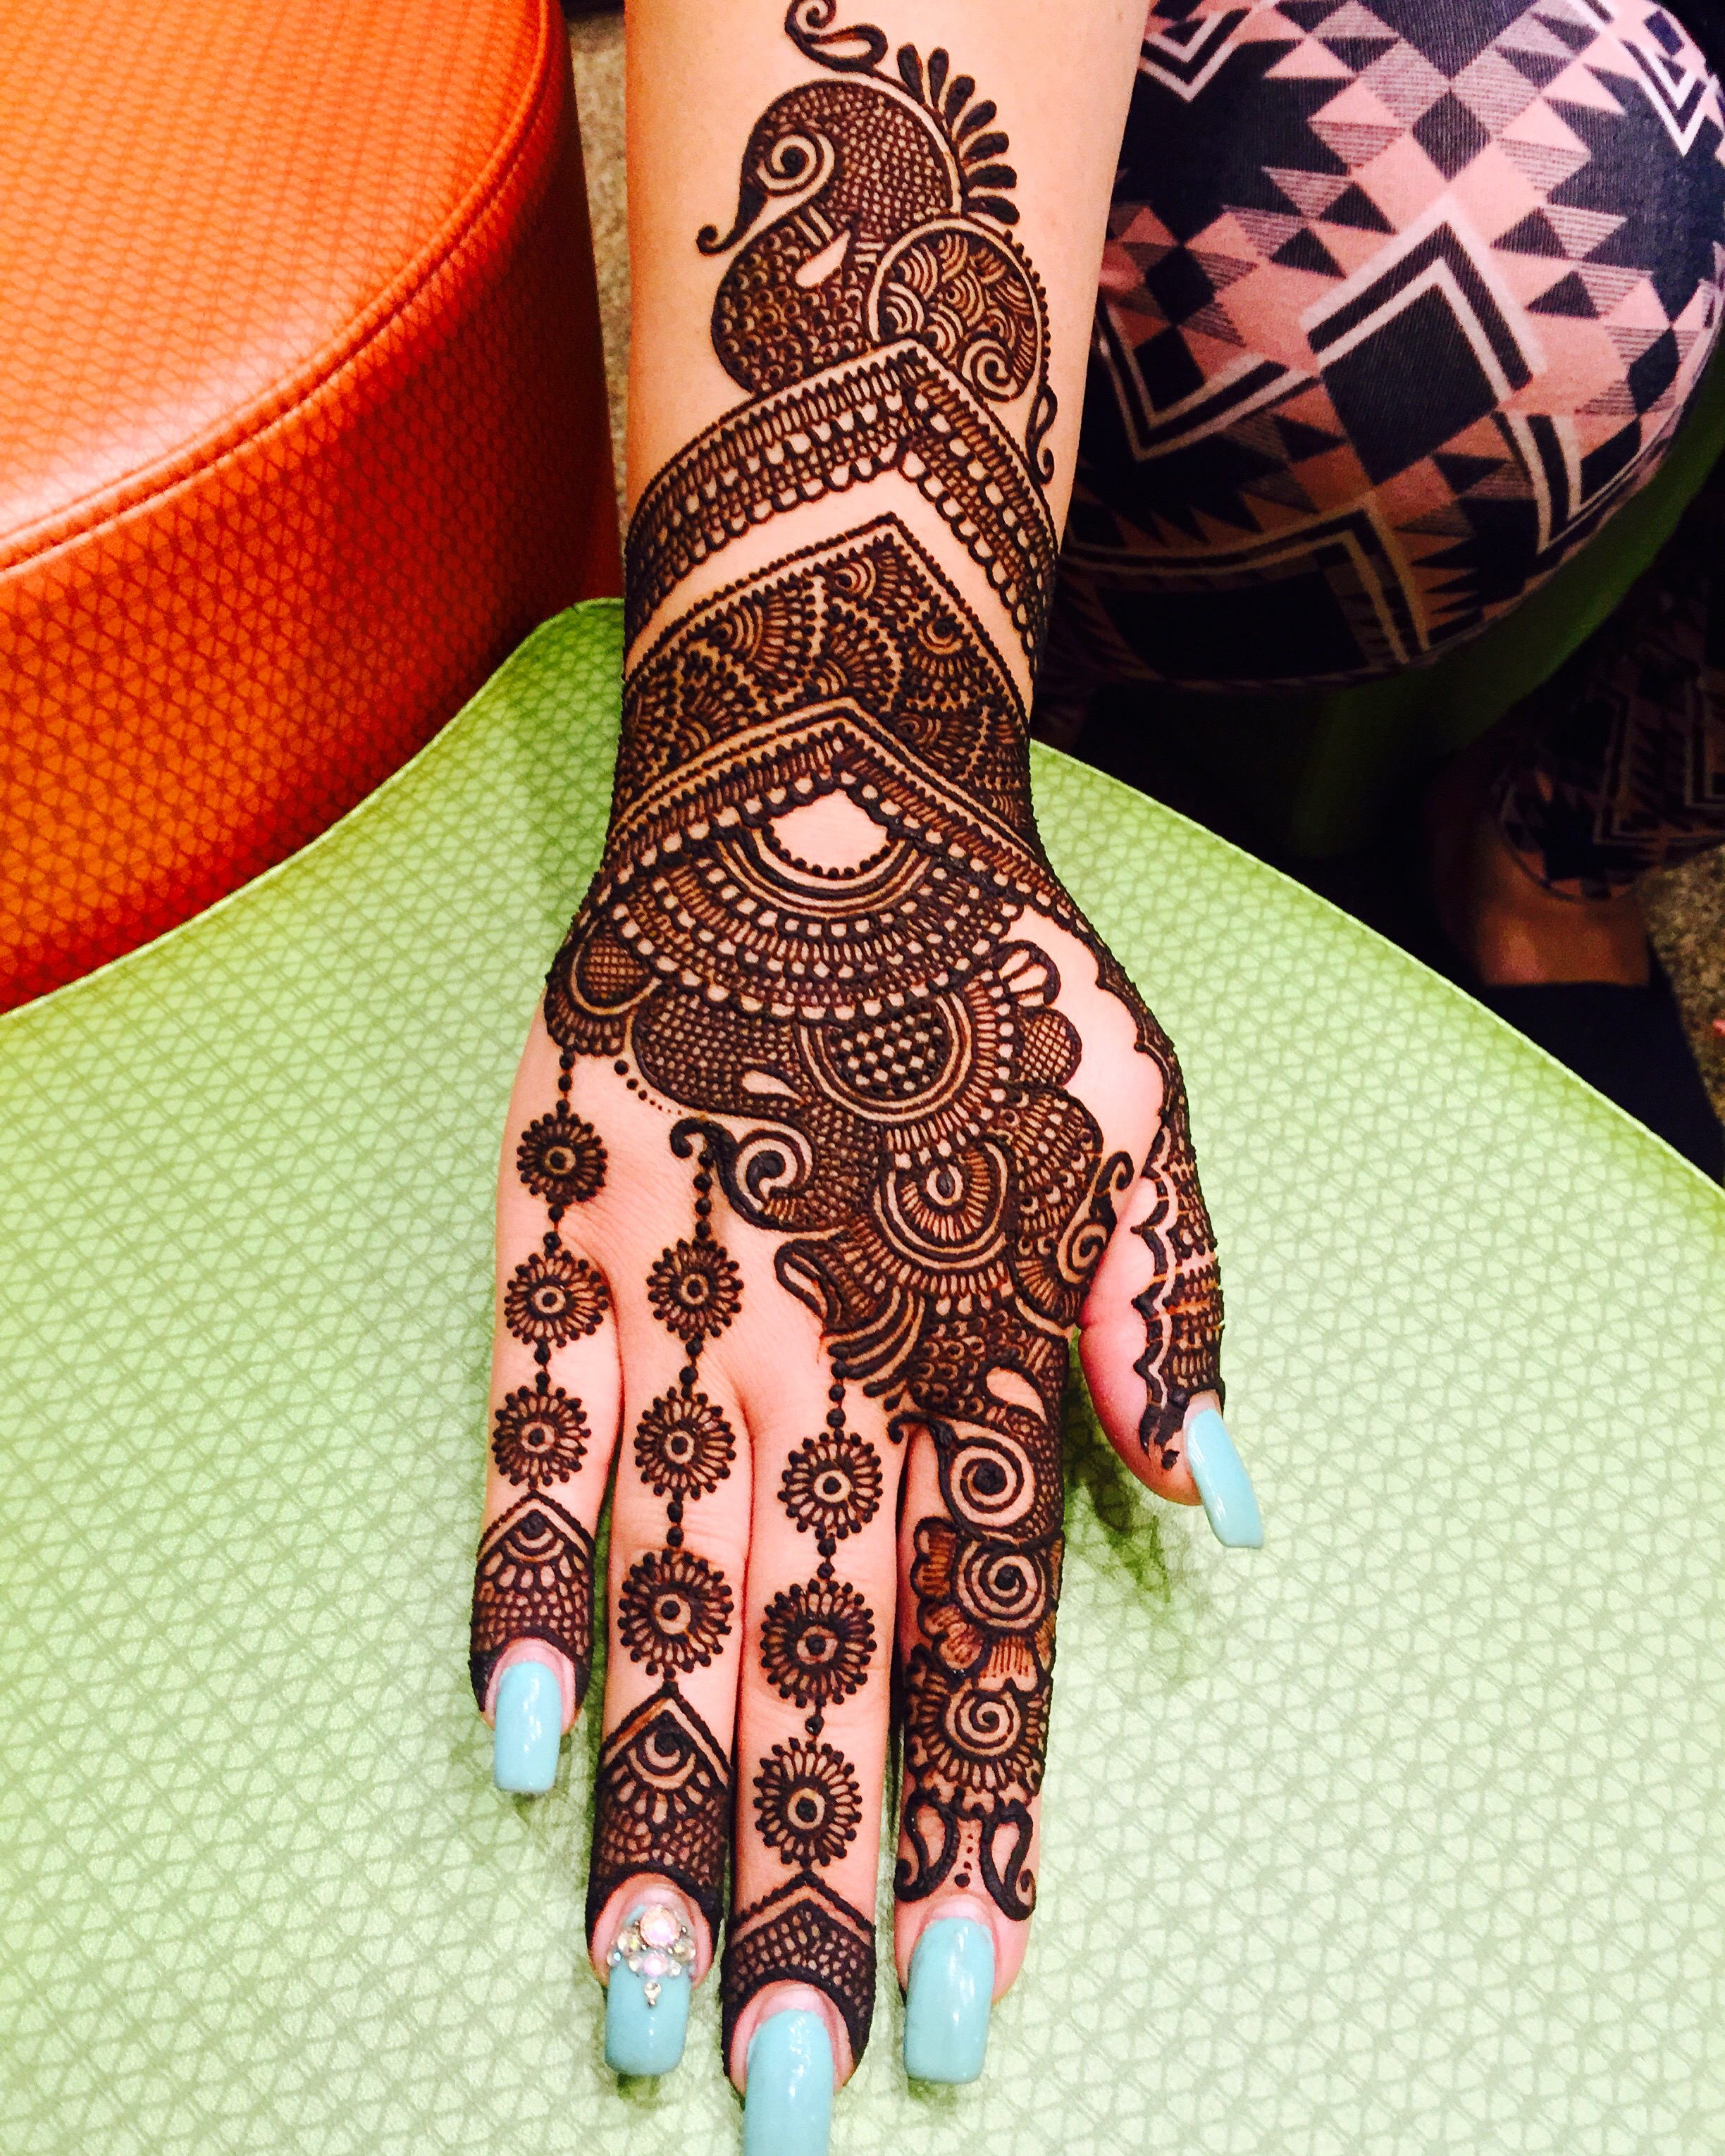 Indian Motifs Peacocks And Bridal Henna With Maaz May 14 15